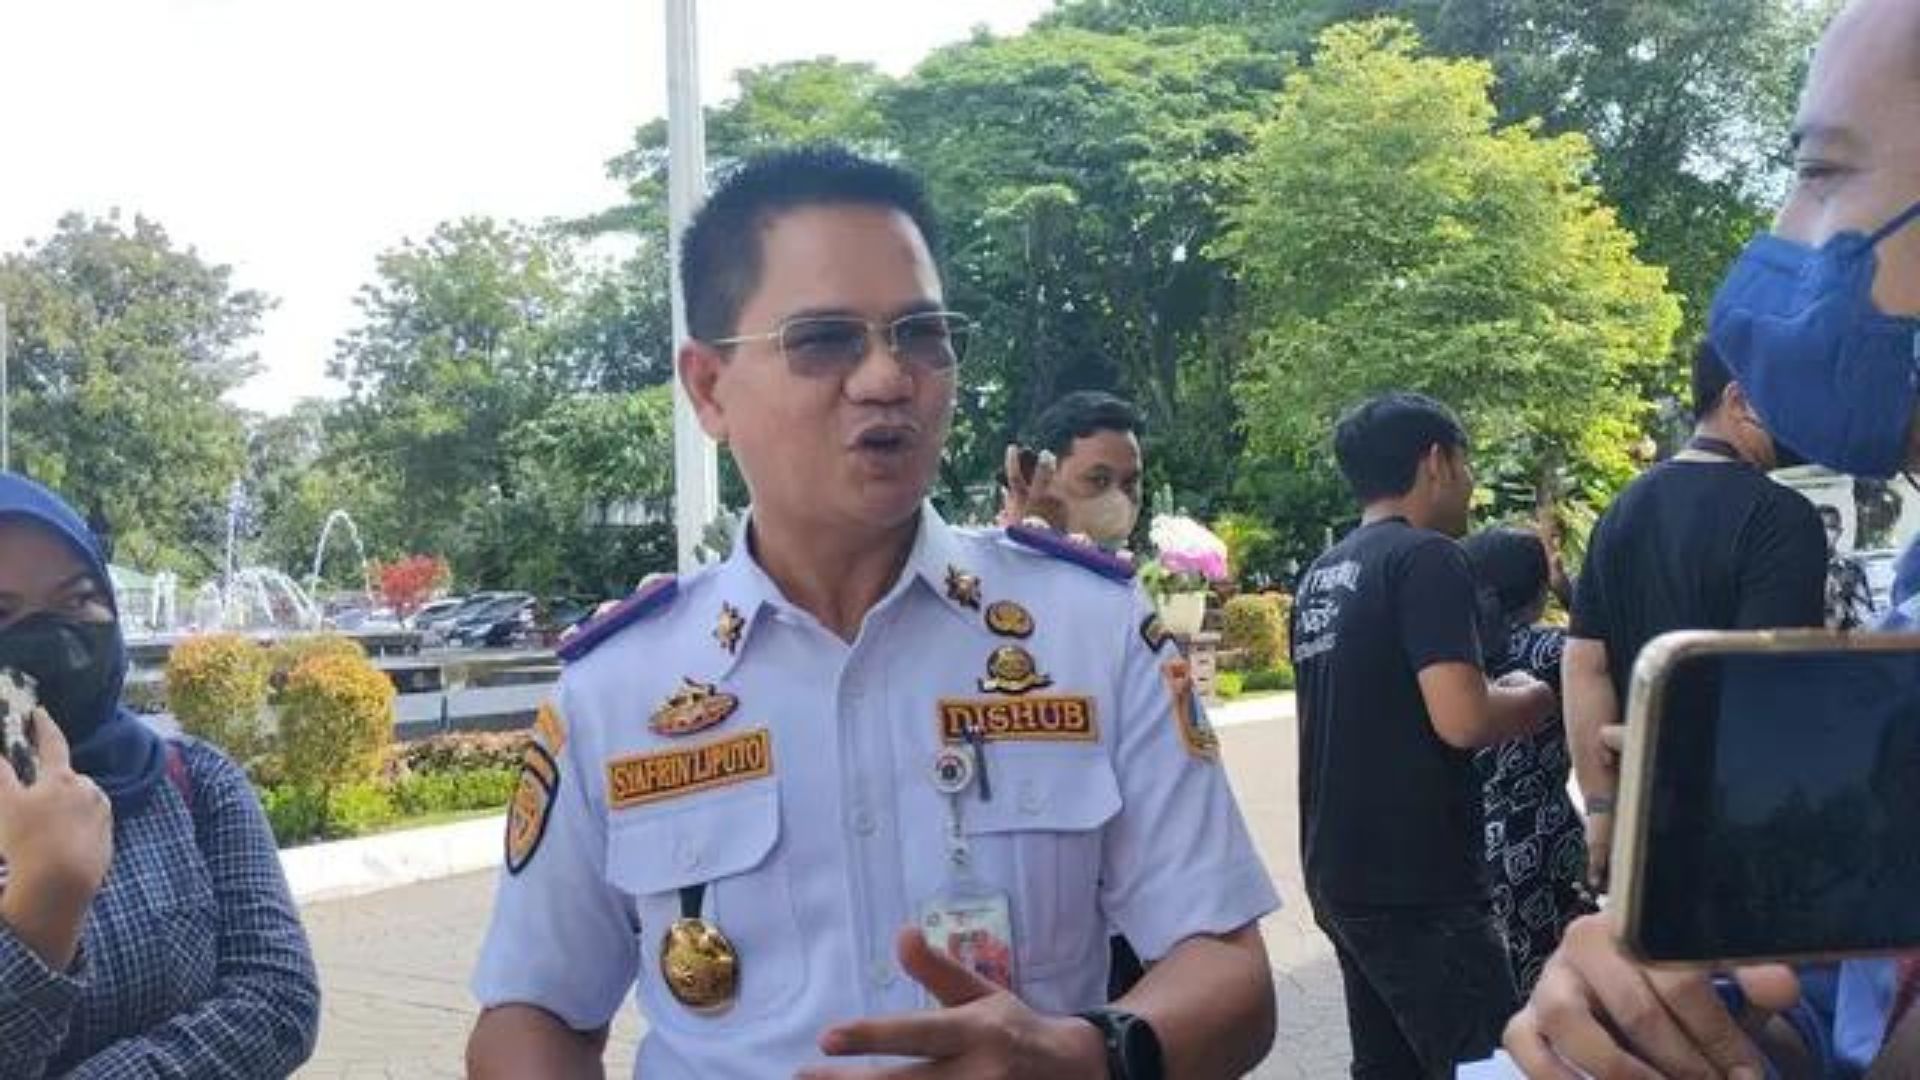 Petugas Dishub DKI Jakarta Yang Terbawa di Kap Mobil